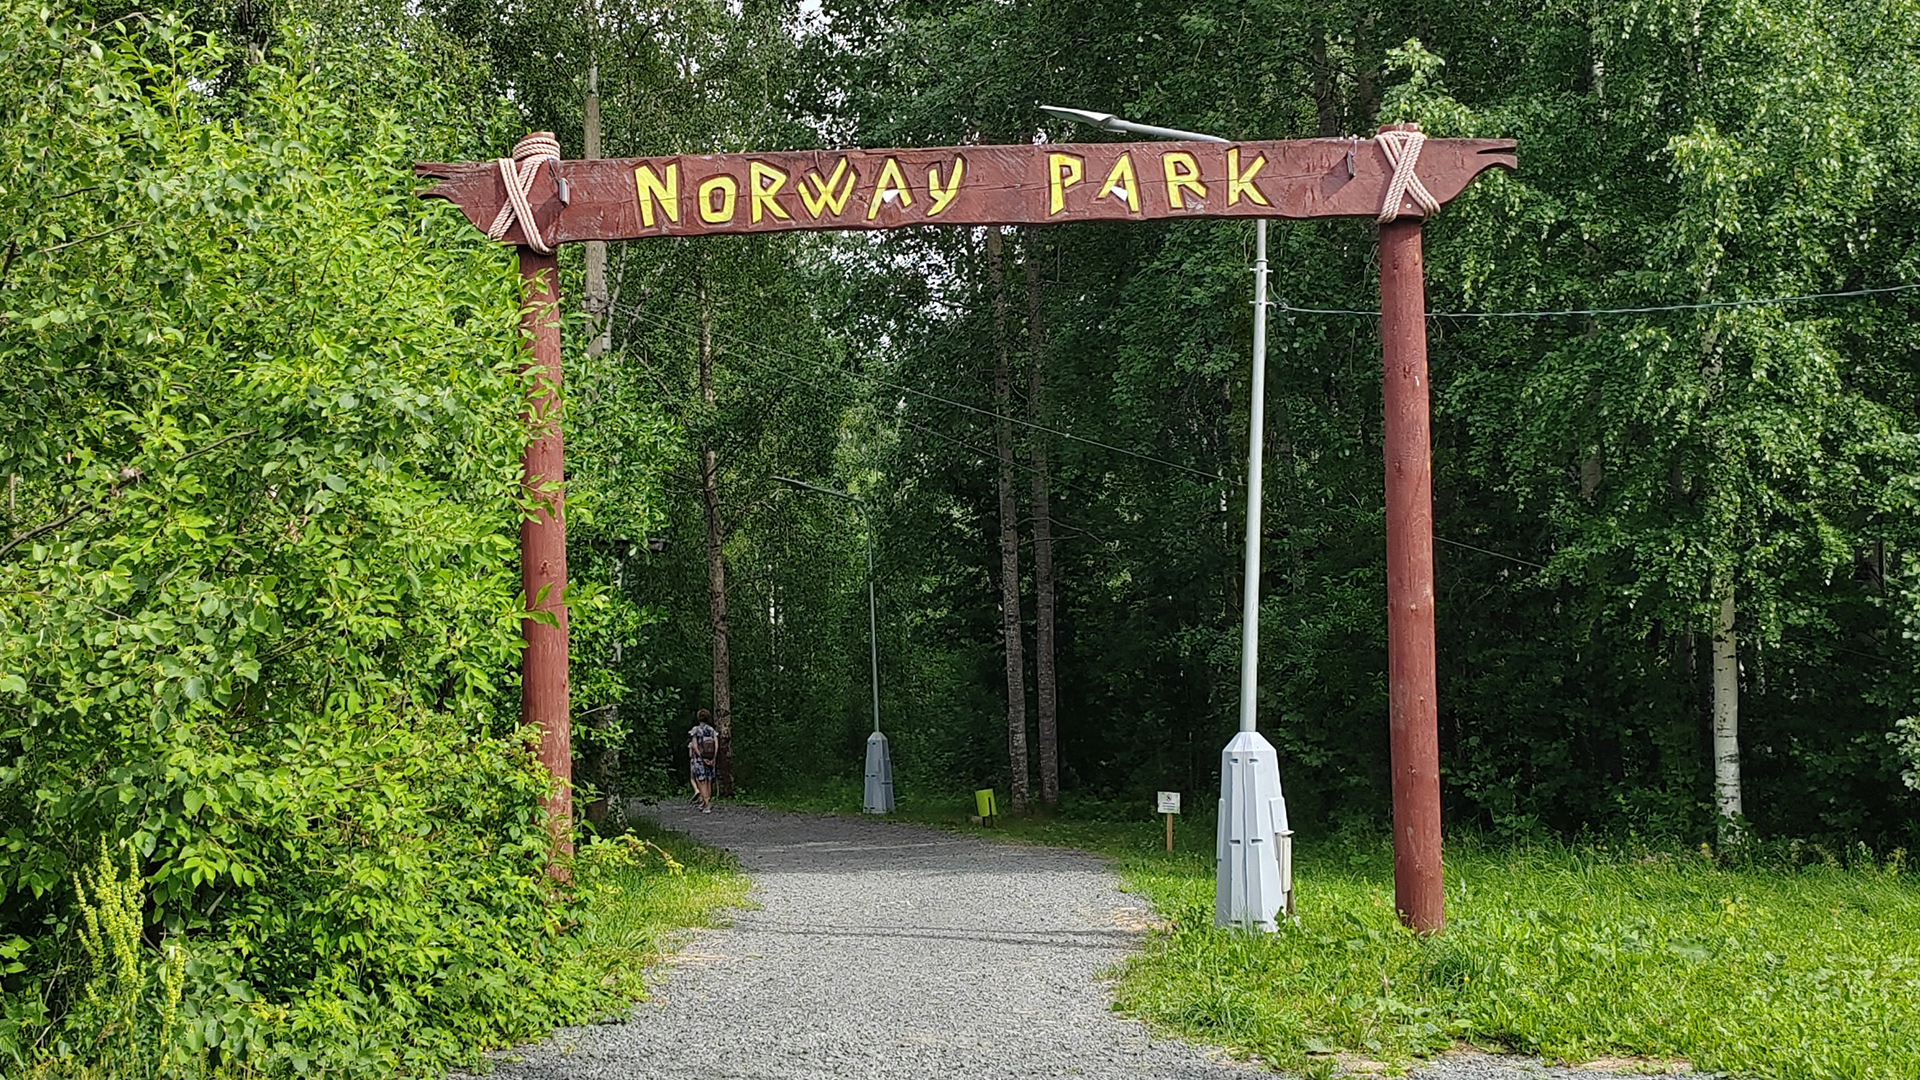 Деревянная арка с надписью «Norway Park» над грунтовой аллеей ведущей в лесной массив.